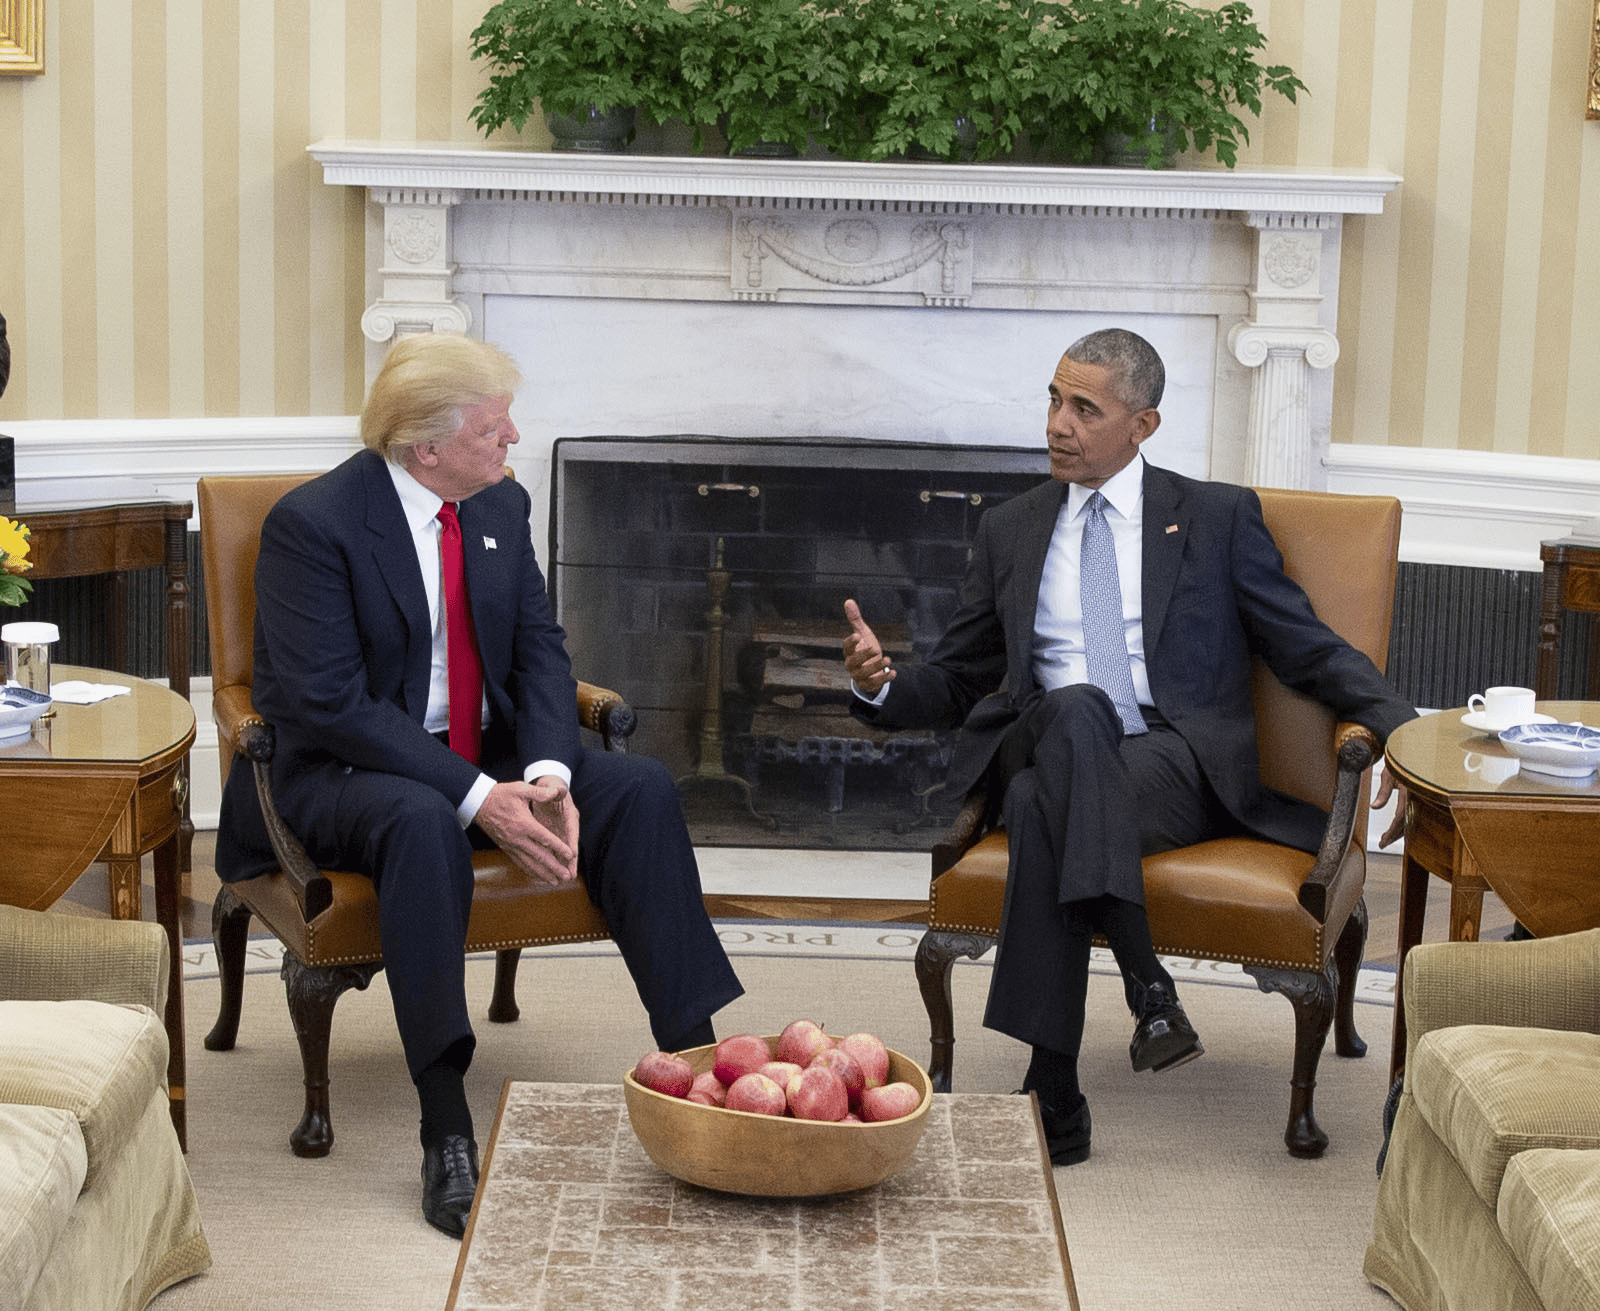 Donald Trump & Barack Obama